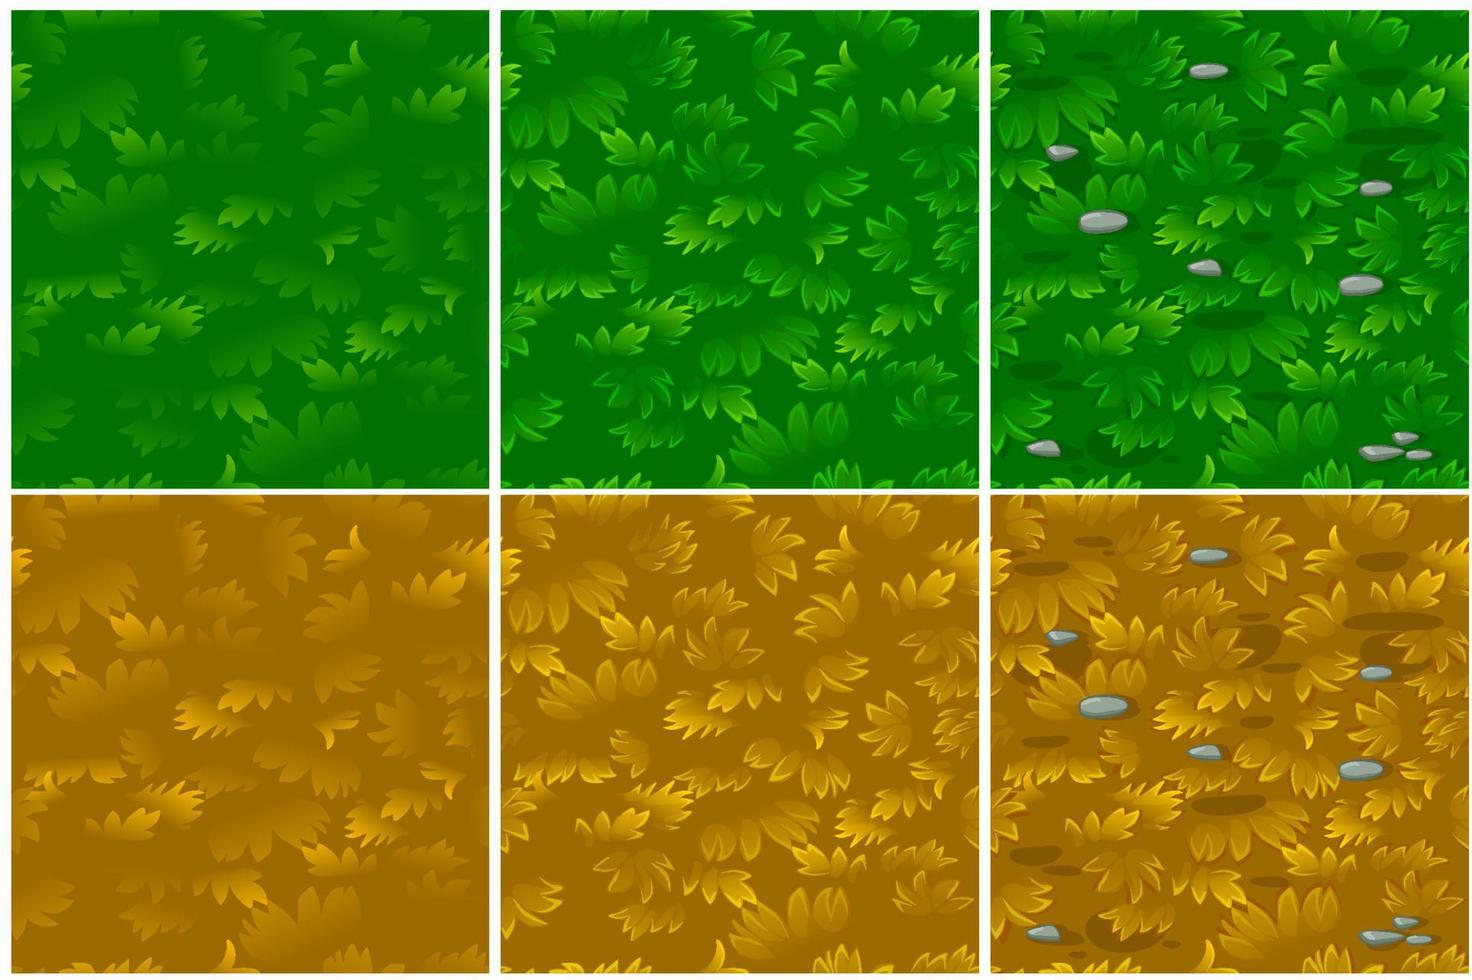 ensemble de motifs harmonieux d'herbe verte et sèche en 3 étapes. arrière-plans d'herbe texturés dans un dessin amélioré. vecteur